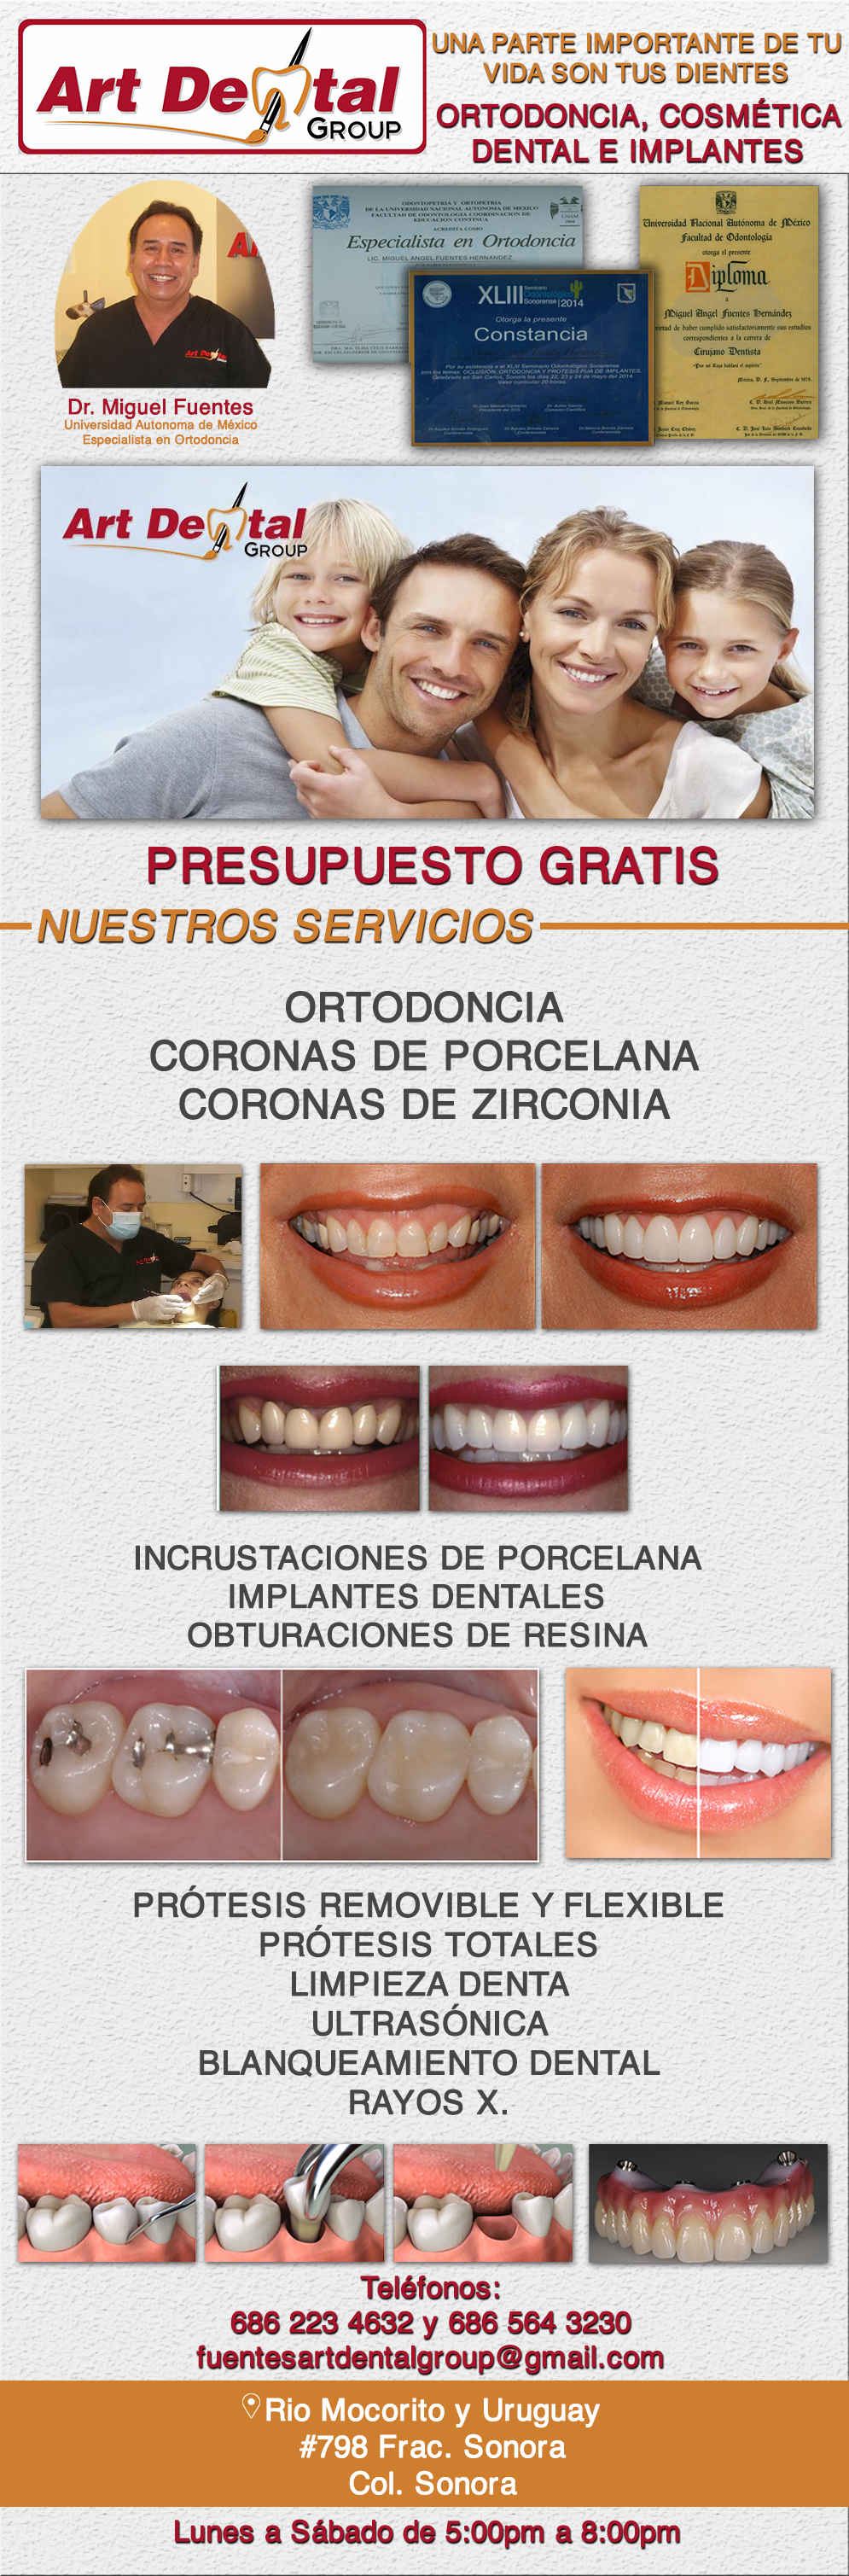 Miguel A. Fuentes Cirujano Dentista-ORTODONCIA, CORONAS DE PORCELANA, CORONAS DE ZIRCONIA, INCRUSTACIONES DE PORCELANA, IMPLANTES DENTALES, OBTURACIONES DE RESINA, PRÓTESIS REMOVIBLE Y FLEXIBLE, PRÓTESIS TOTALES, LIMPIEZA DENTAL ULTRASÓNICA, BLANQUEAMIENTO DENTAL, RAYOS X. 